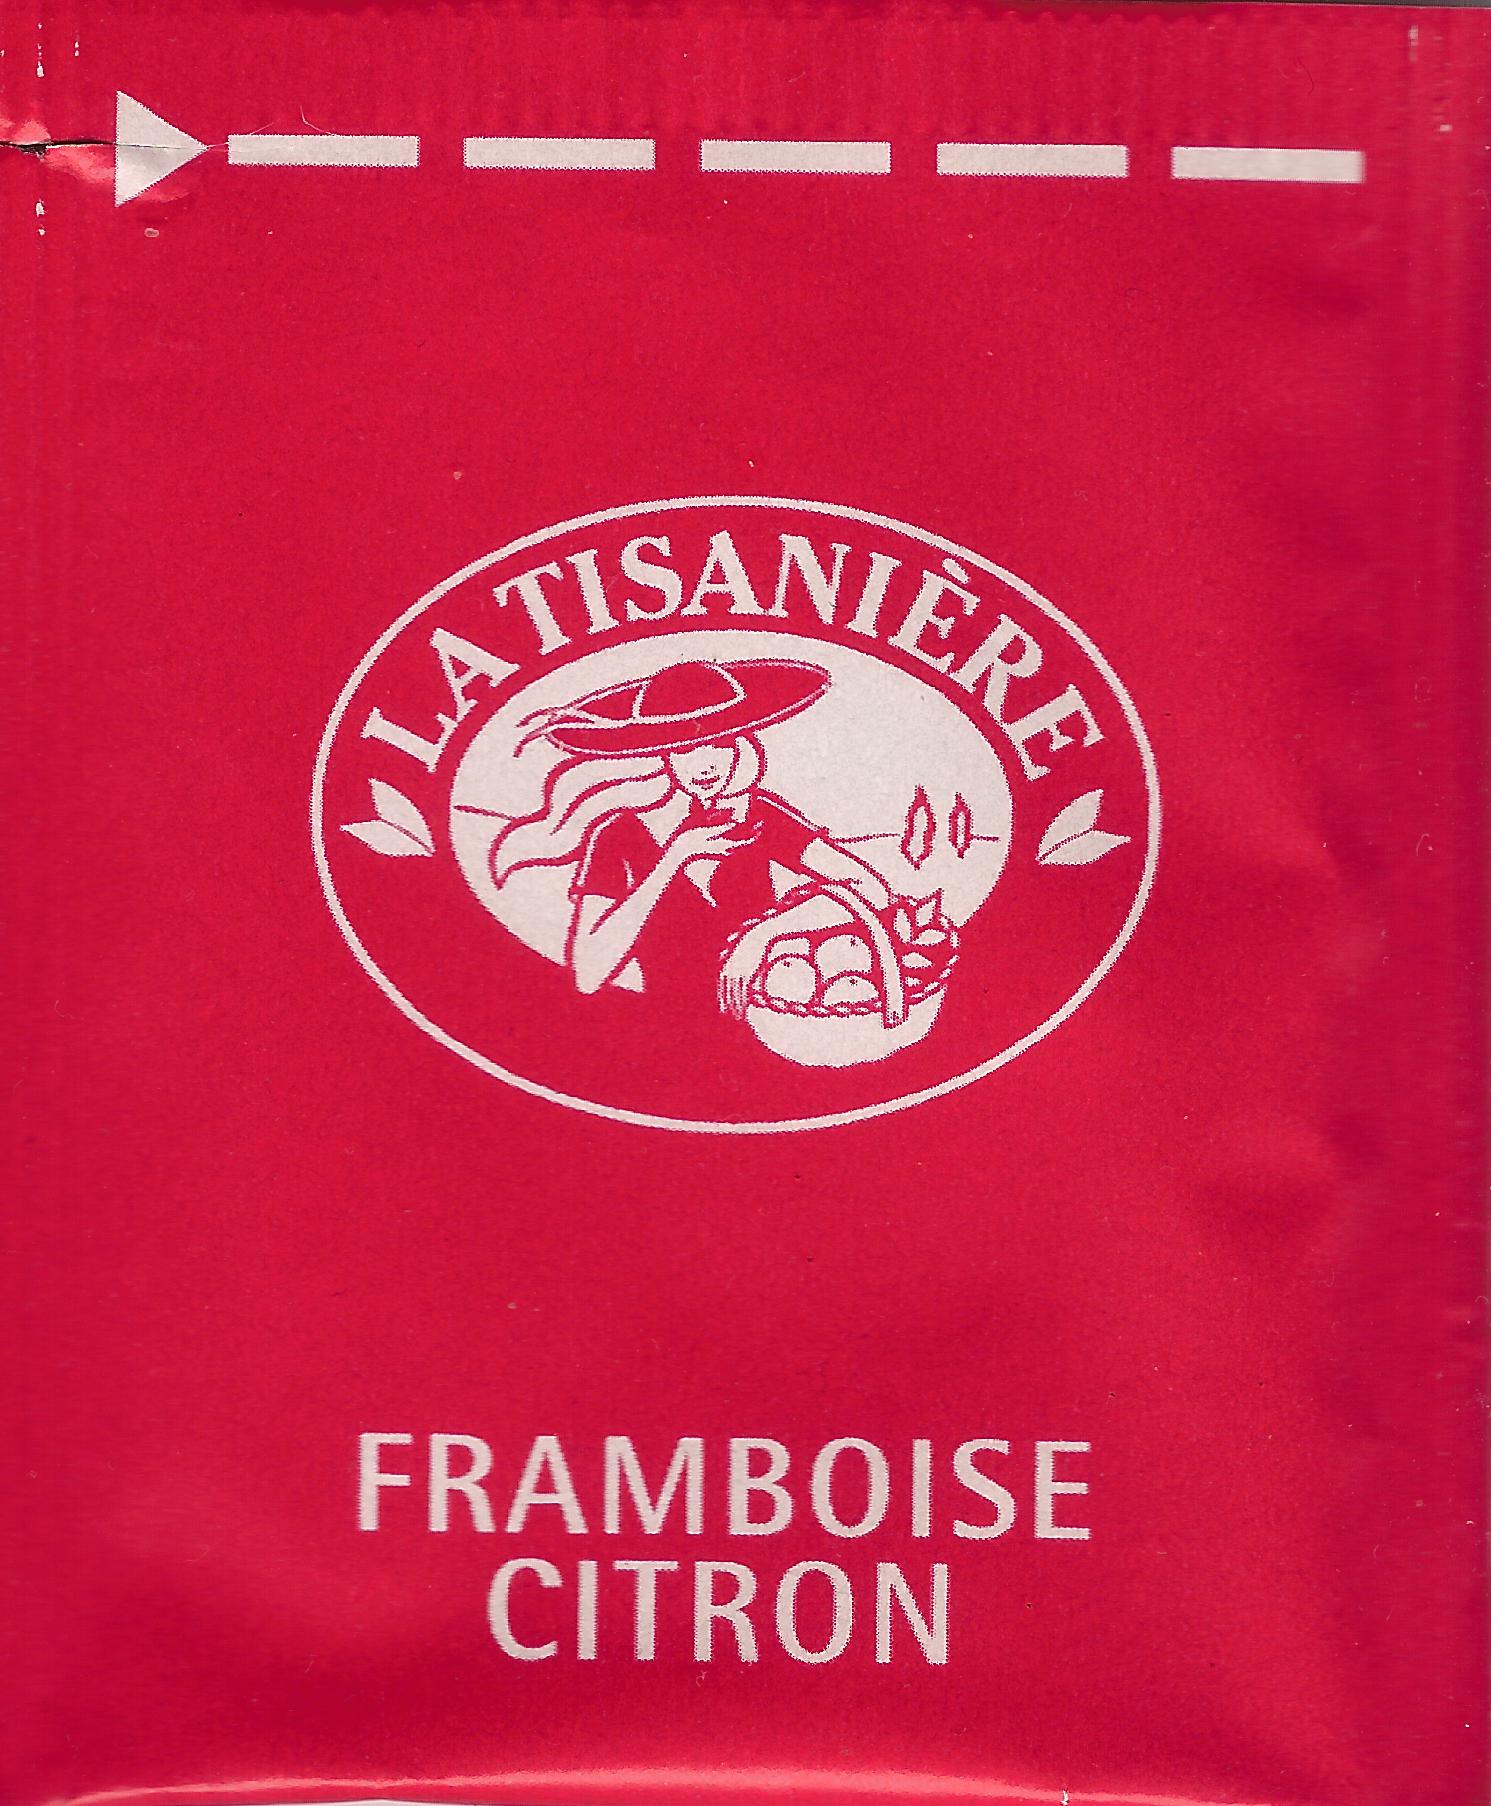 La Tisanière